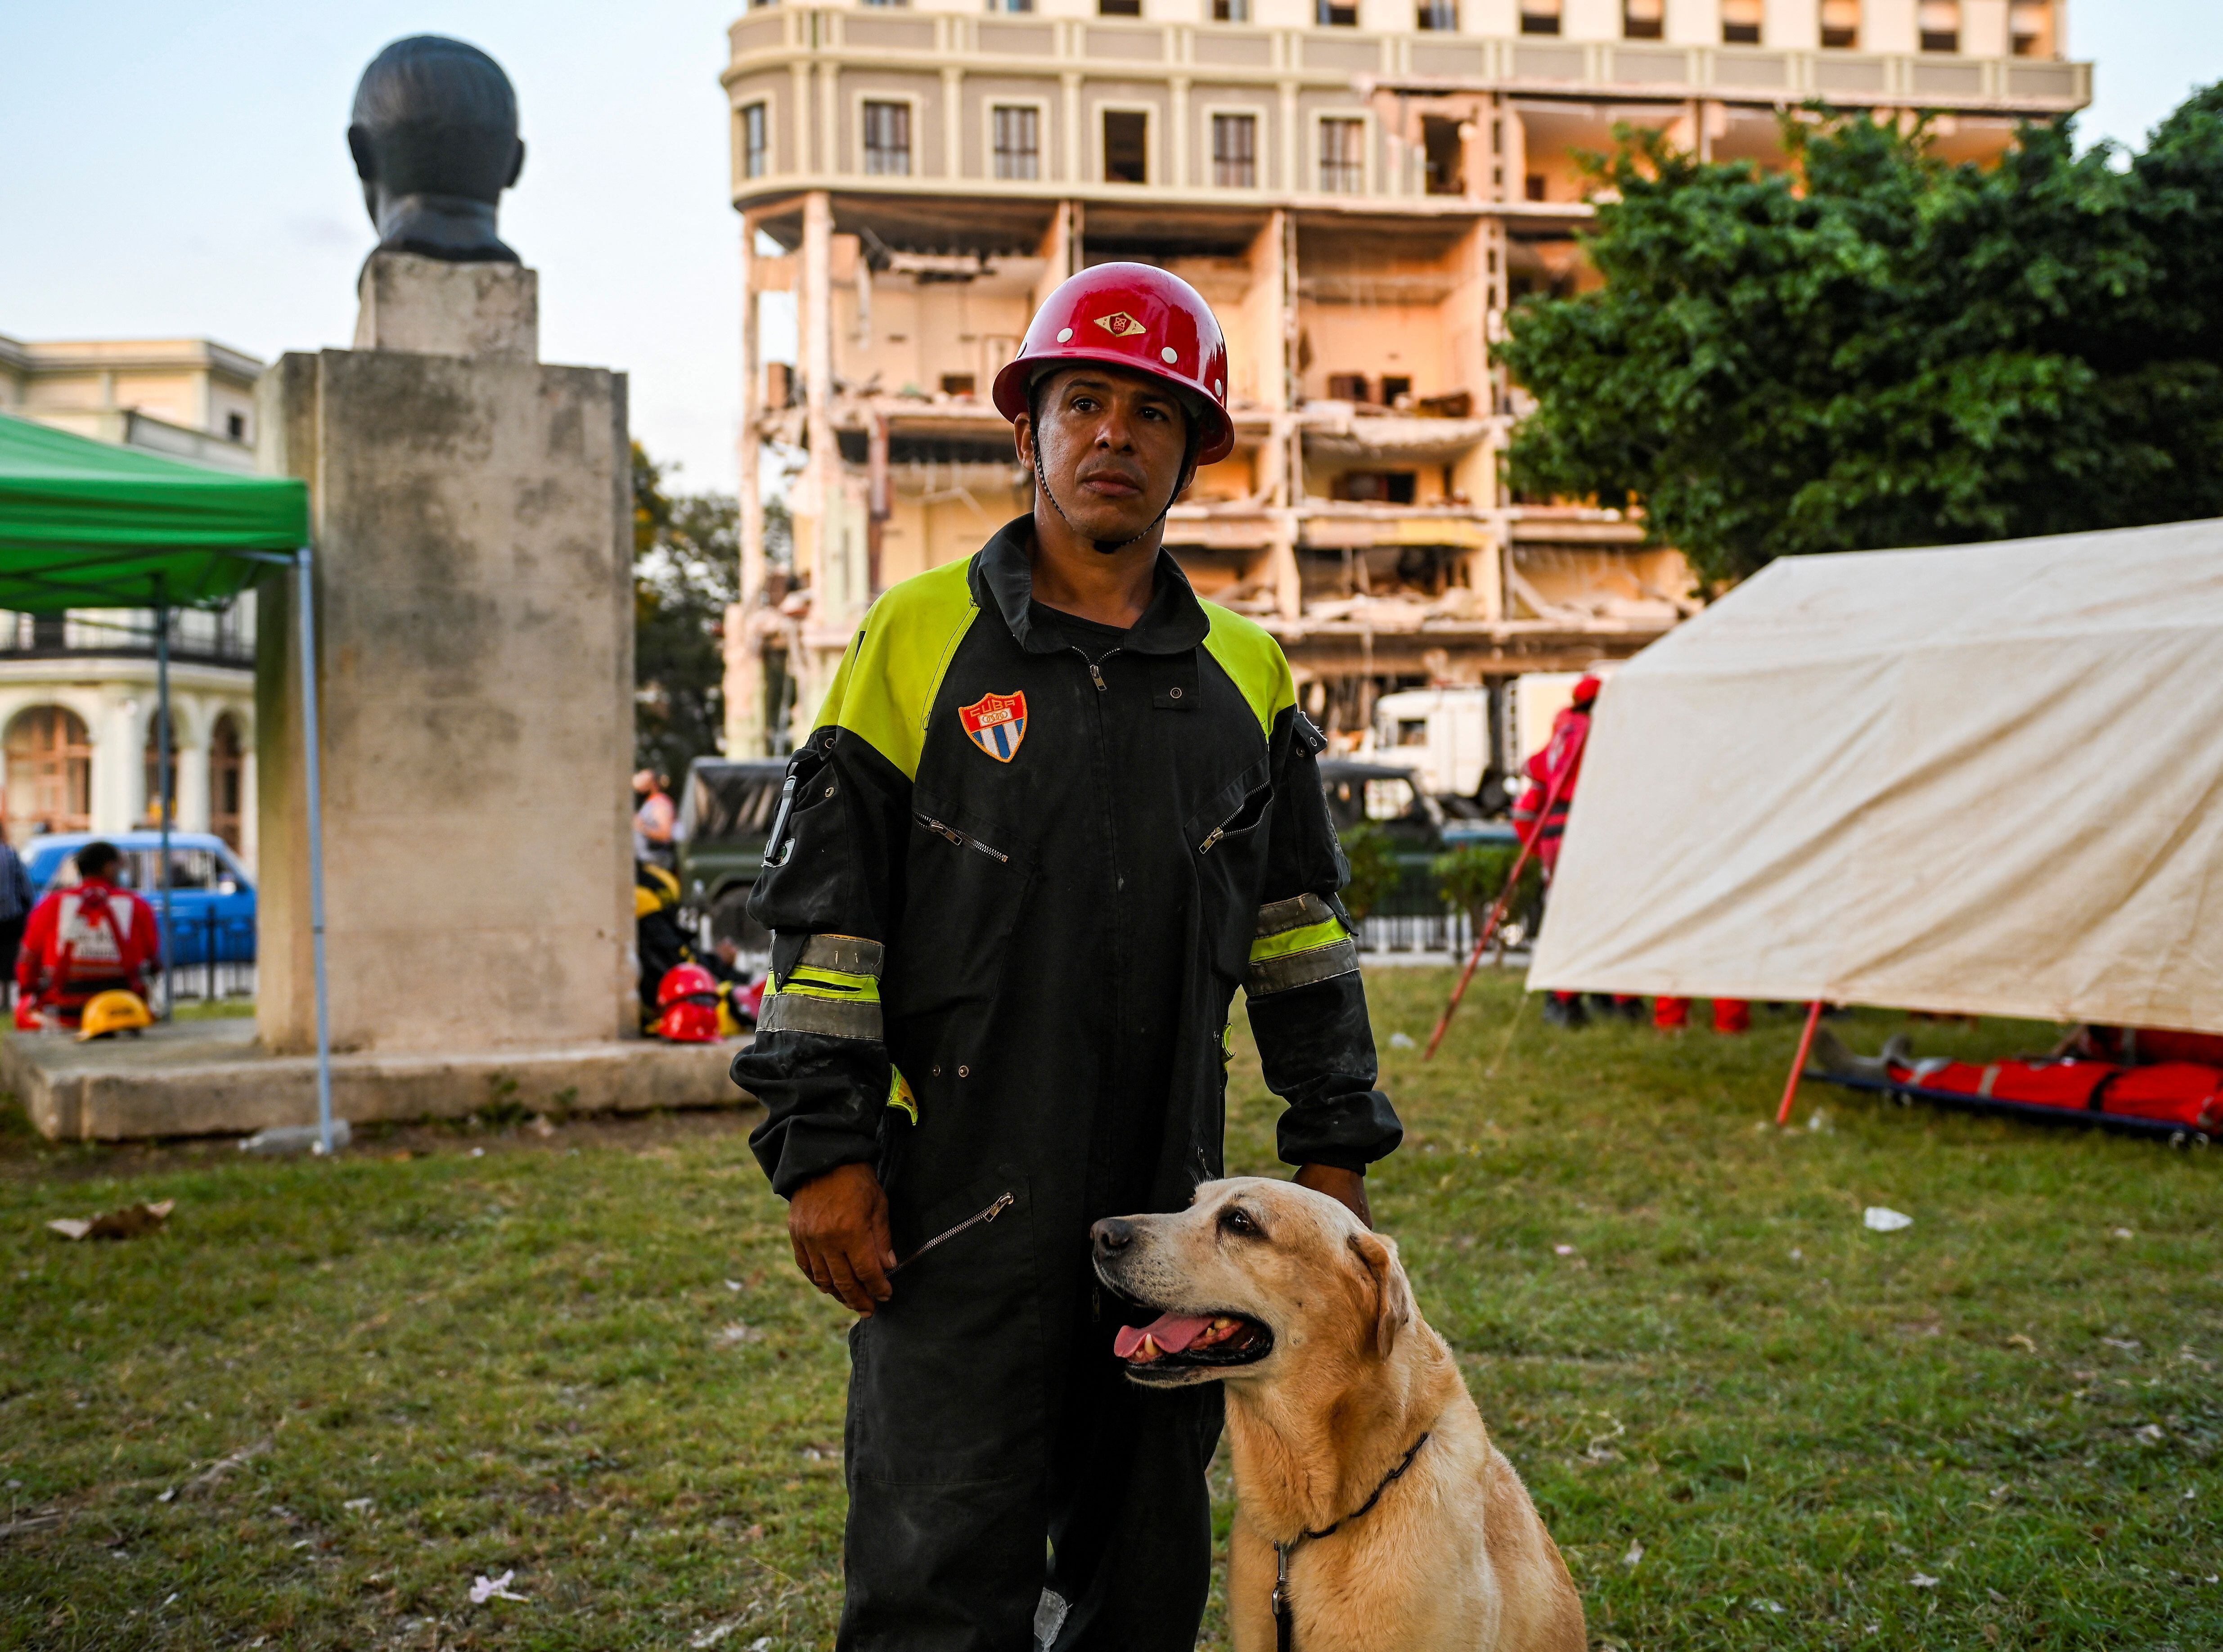 El técnico canino Edel Llopiz posa para una foto cerca del Hotel Saratoga en La Habana, el 9 de mayo de 2022, días después de una explosión que ha dejado 42 muertos, incluidos cuatro niños y 54 heridos, de los cuales 17 permanecen en el hospital. (Foto de YAMIL LAGE / AFP)